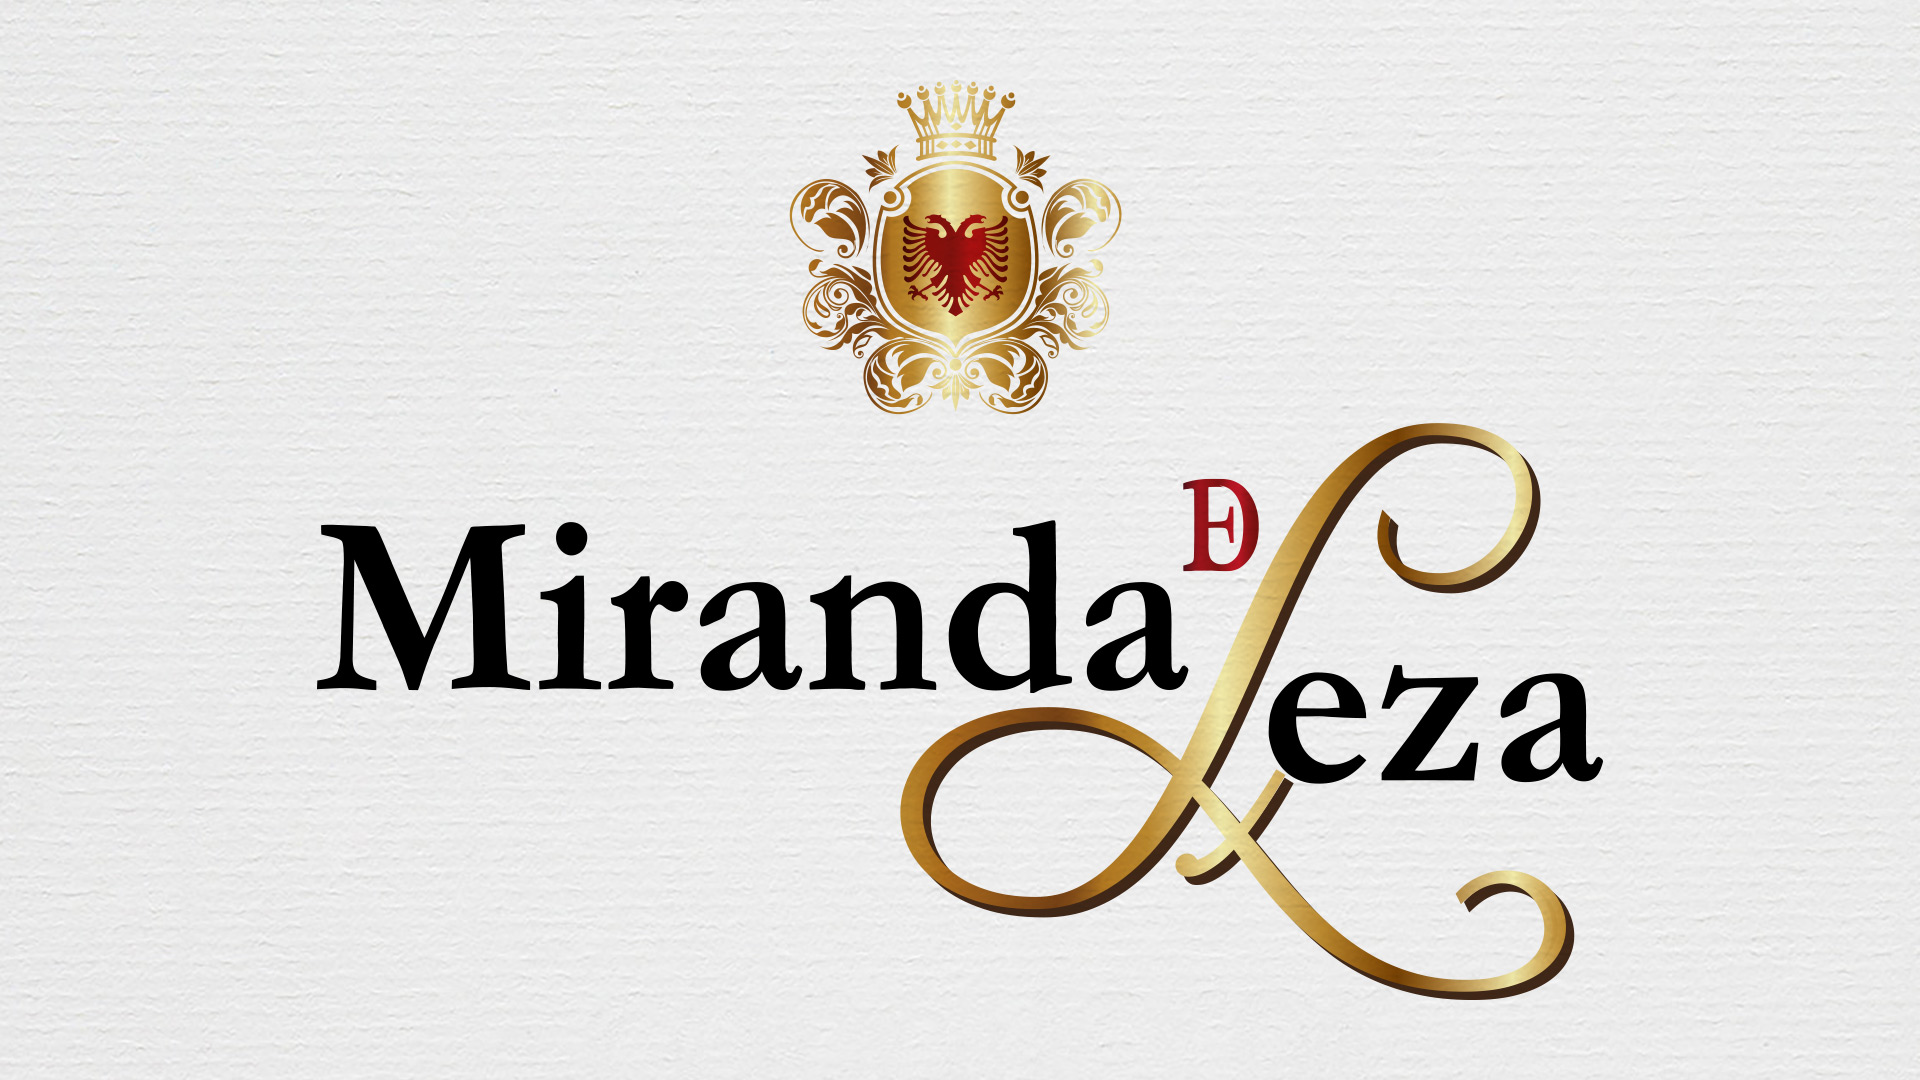 Diseño de logo y elementos gráficos creativos para etiqueta de vino español MIRANDA DE LEZA